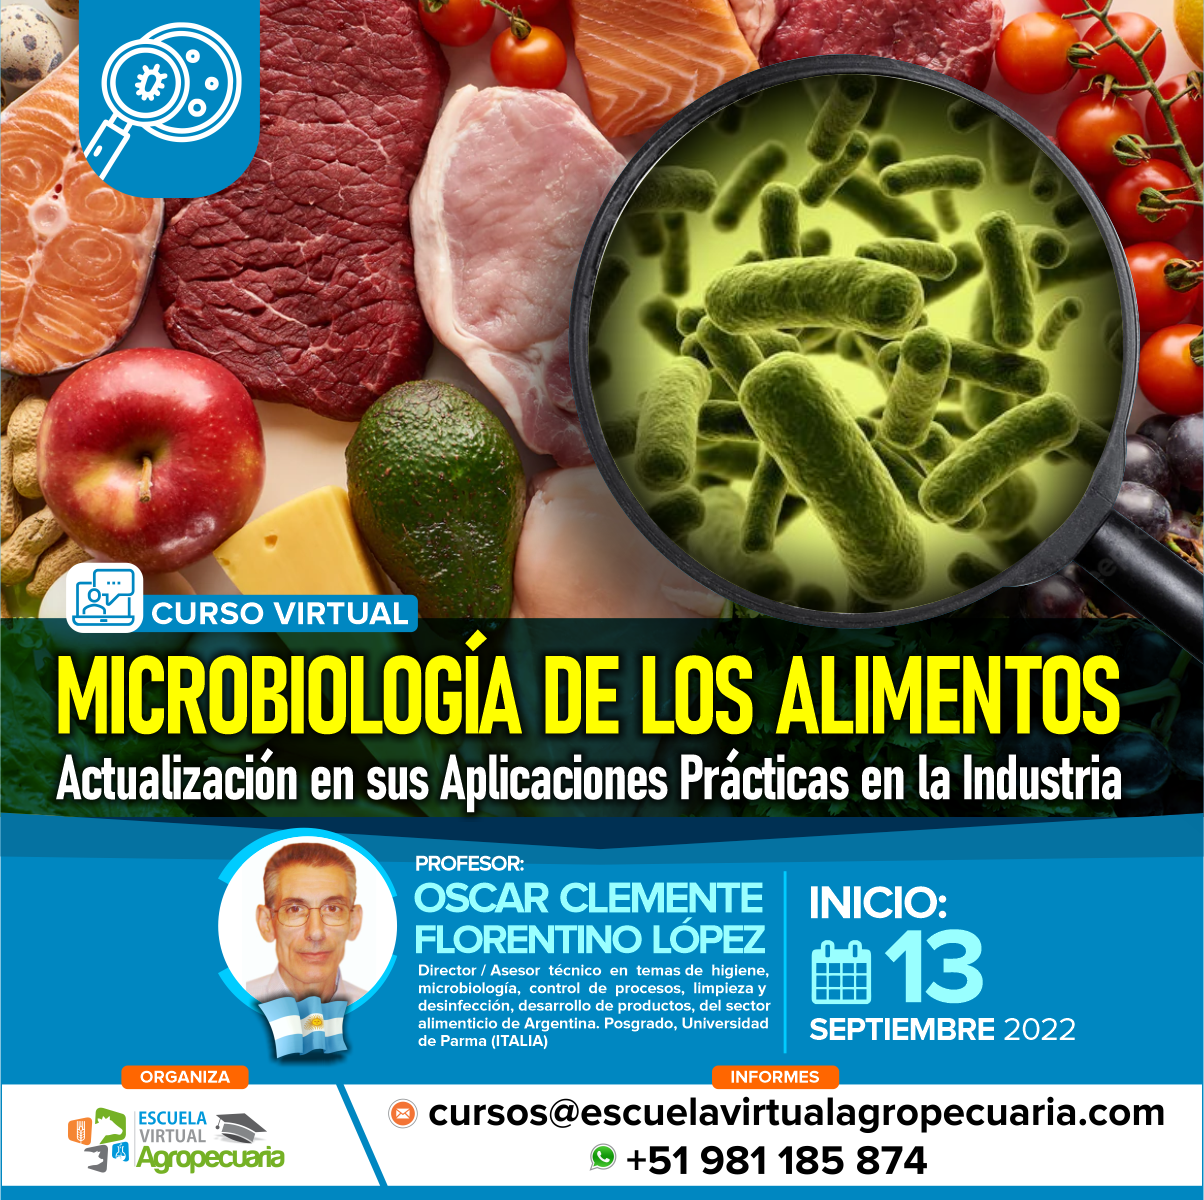 Curso Virtual: Microbiología de los Alimentos - Actualización en sus Aplicaciones Prácticas en la Industria